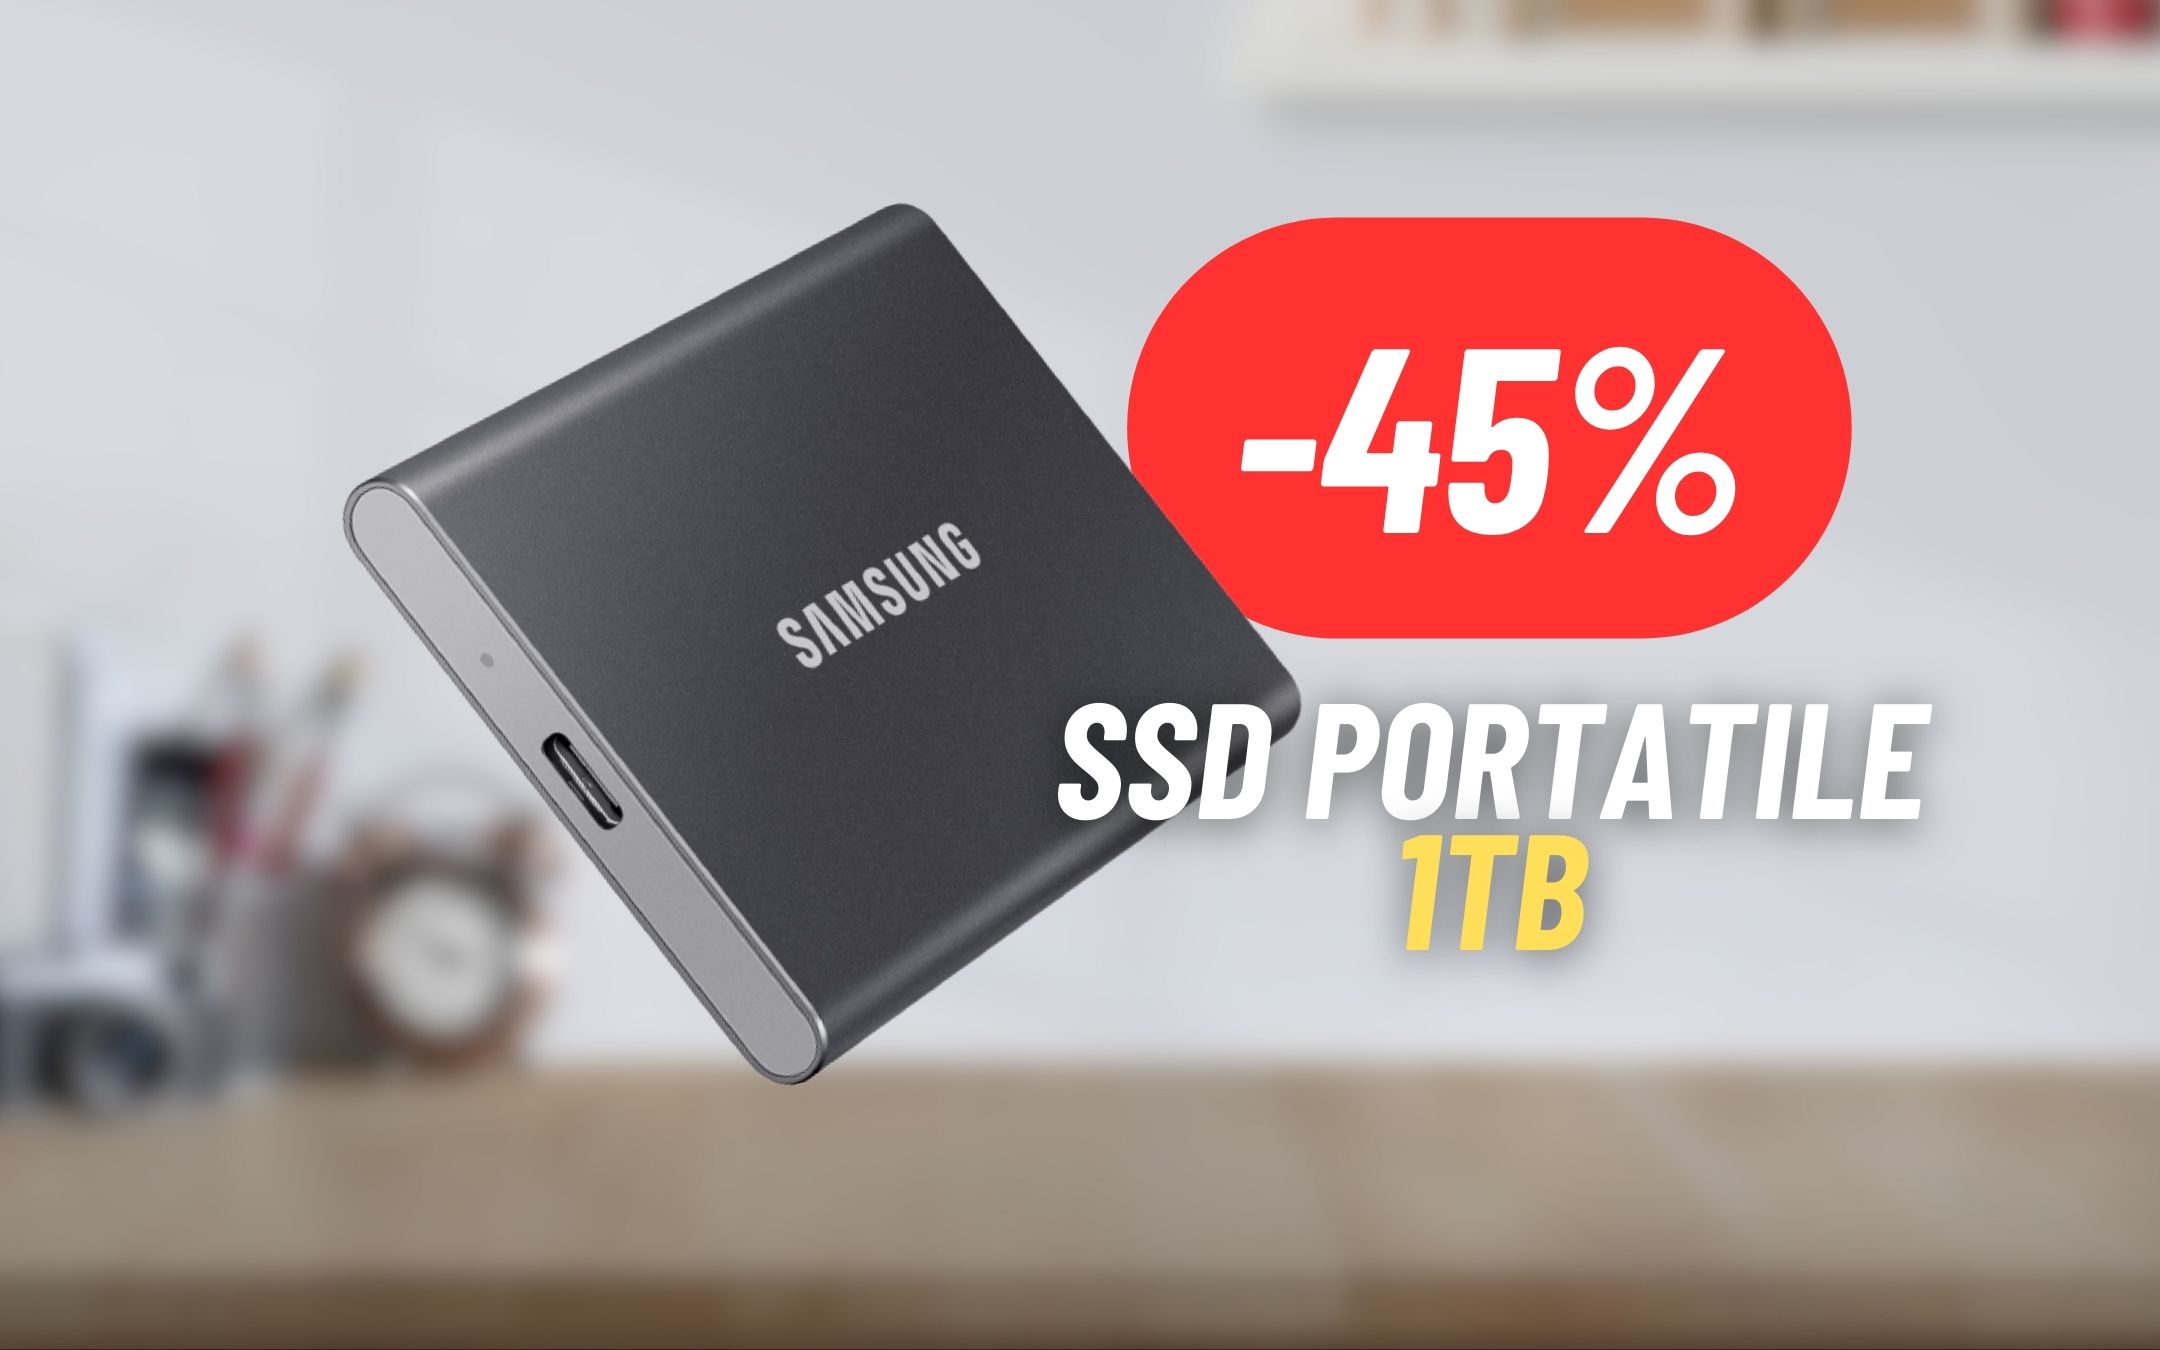 Porta 1TB a spasso con l'SSD Portatile di Samsung al 45% di sconto